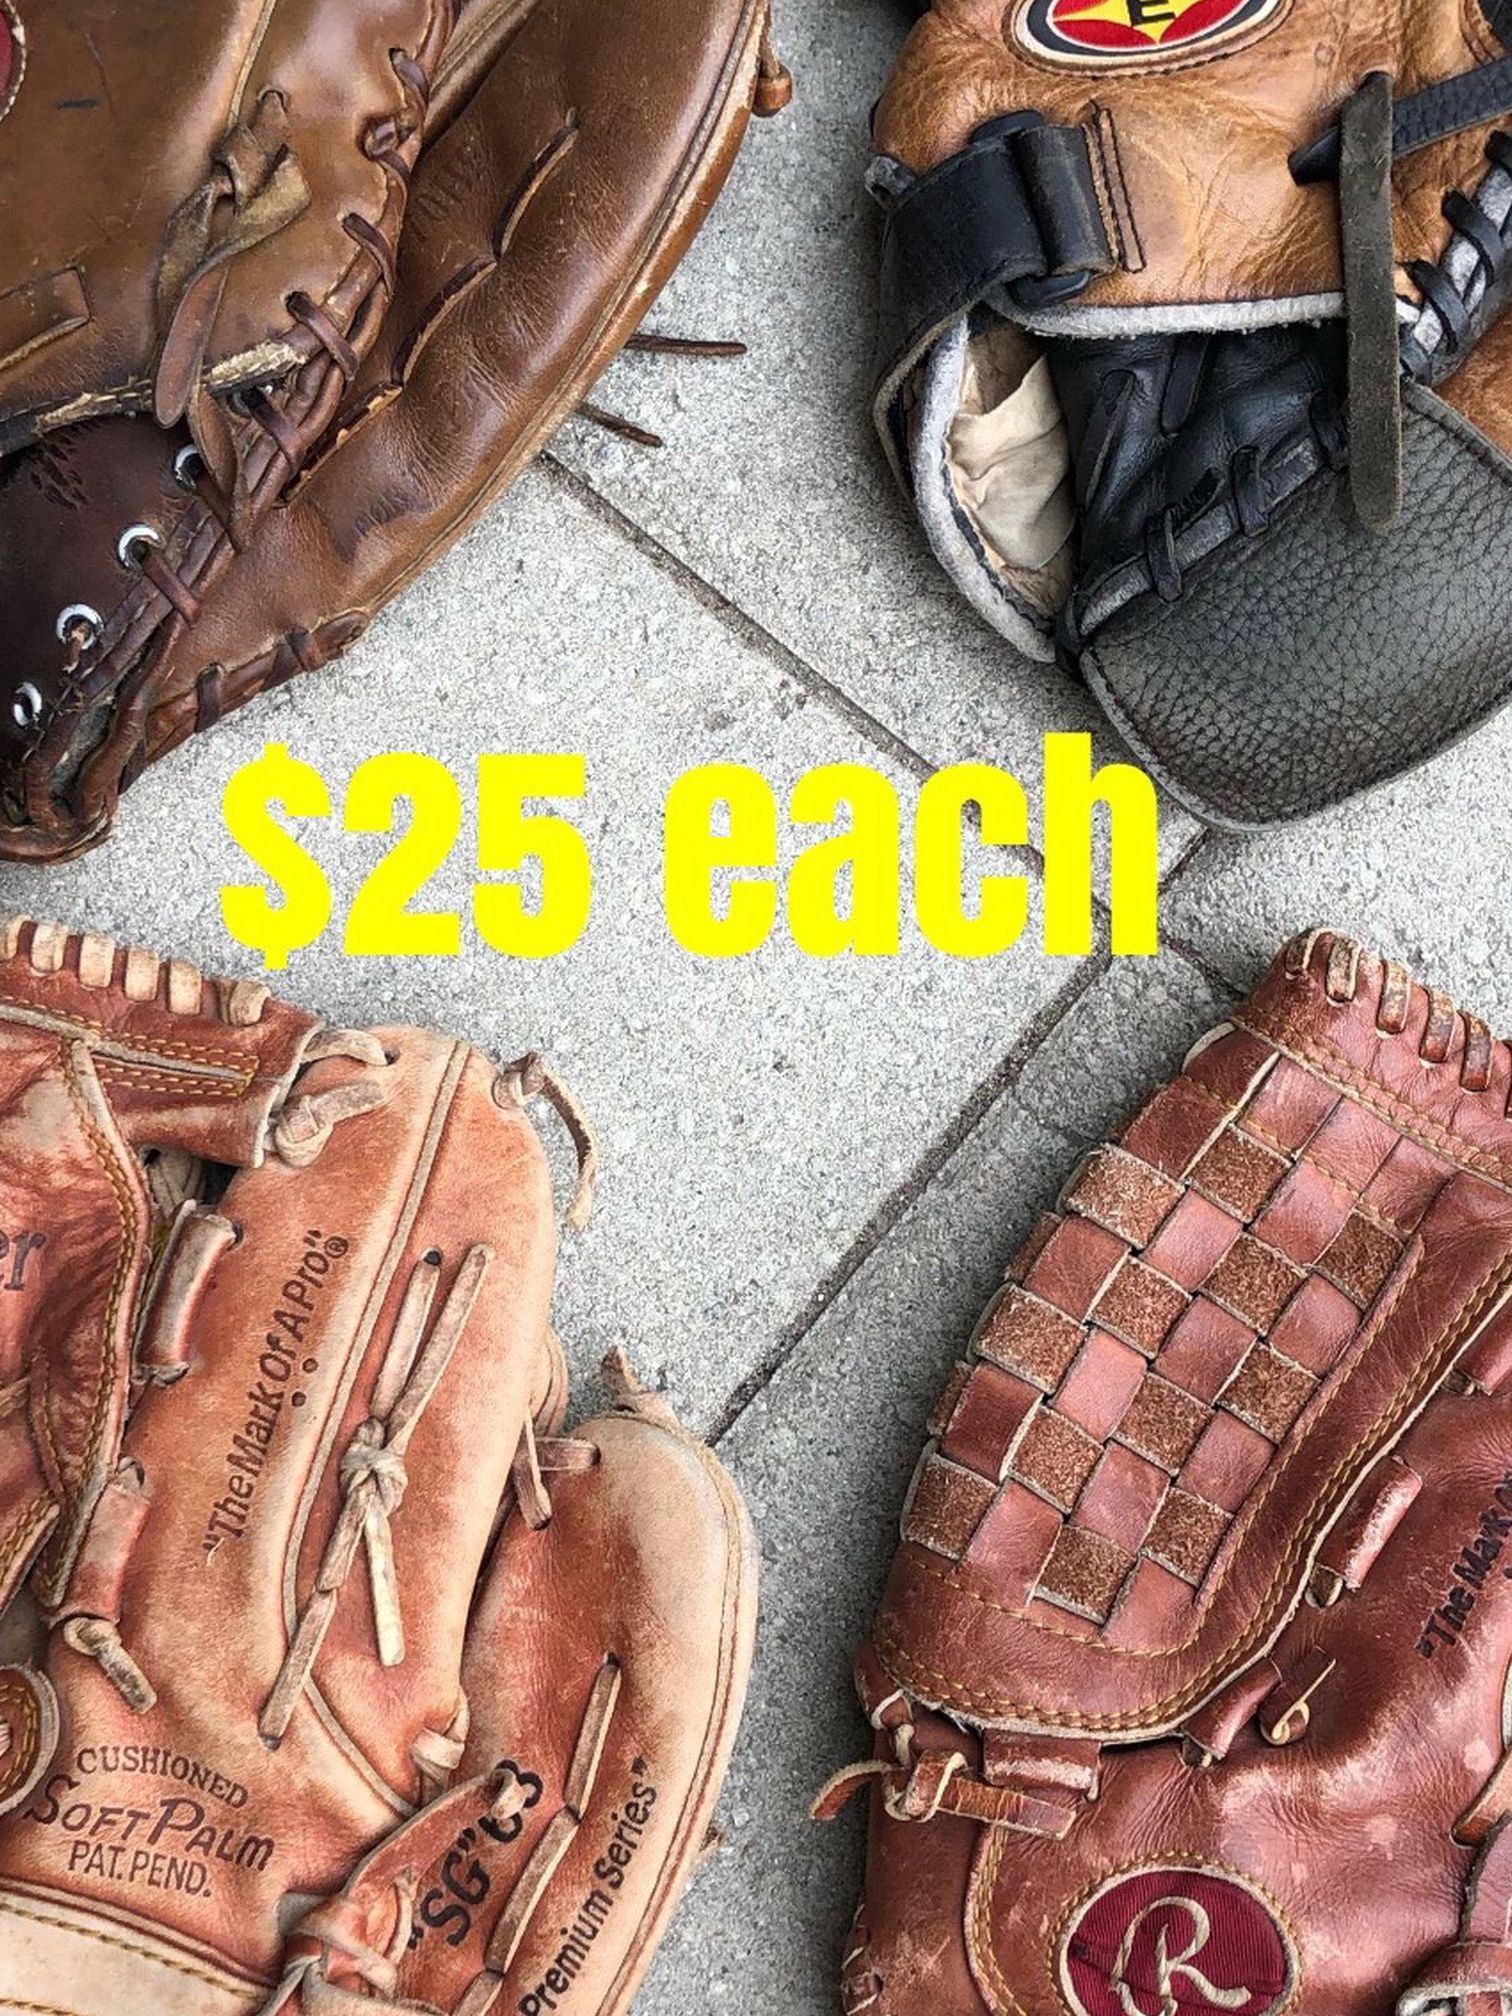 Softball gloves $25 each equipment Rawlings easton bat